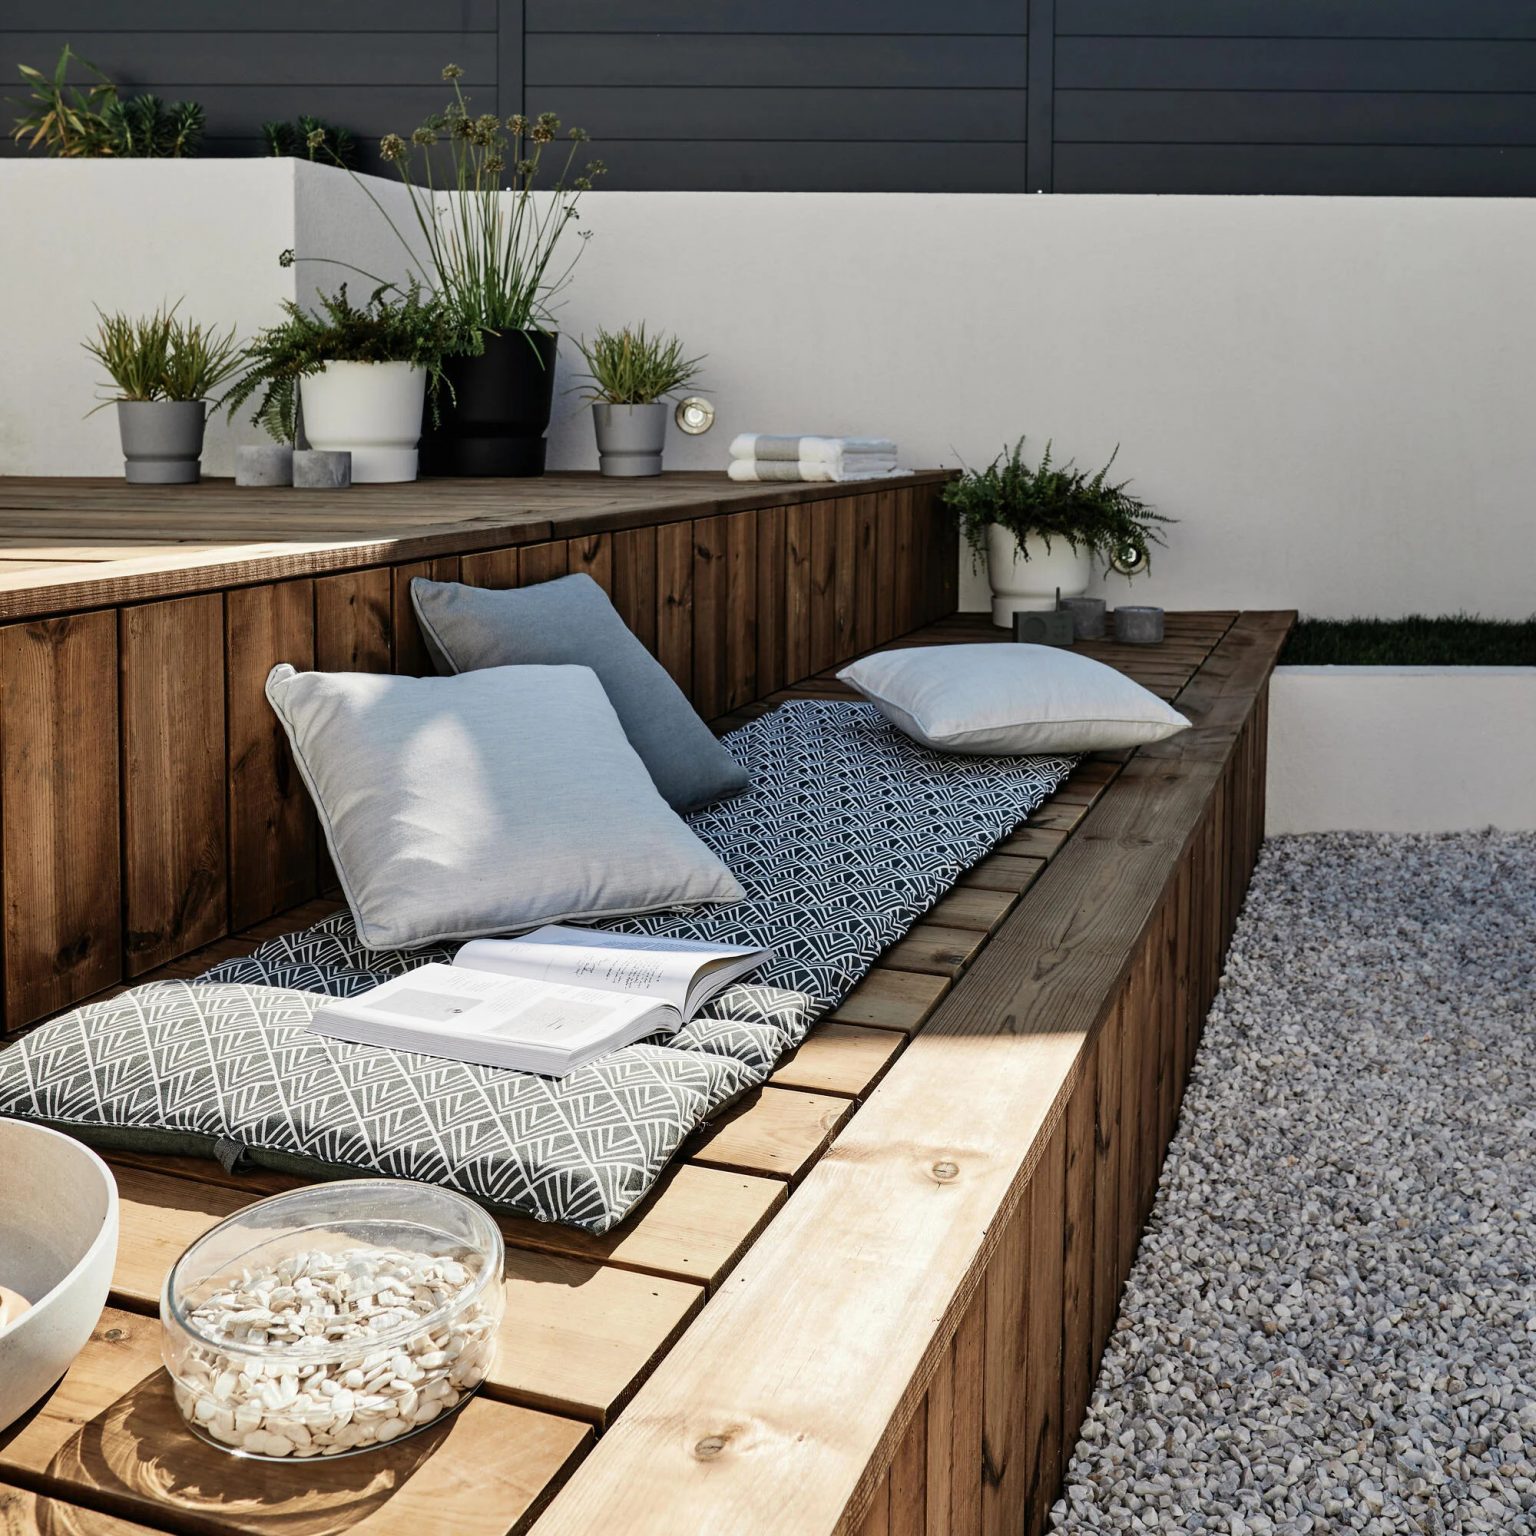 jardin avec spa dans terrasse bois